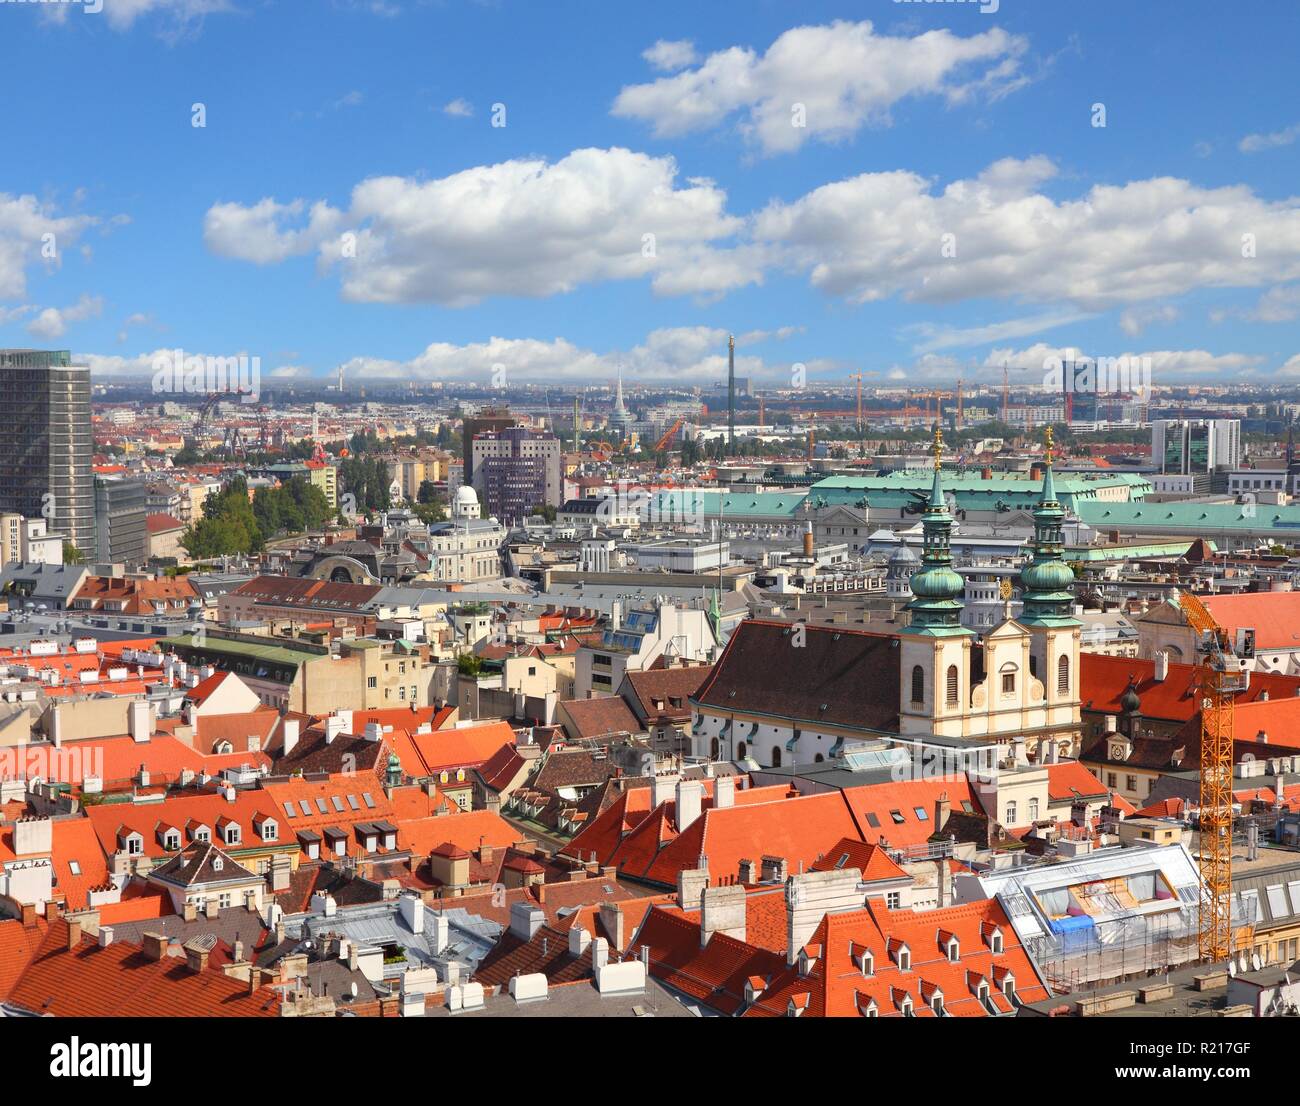 Vienna, Austria - Vista aerea della città vecchia, un sito Patrimonio Mondiale dell'UNESCO. Foto Stock